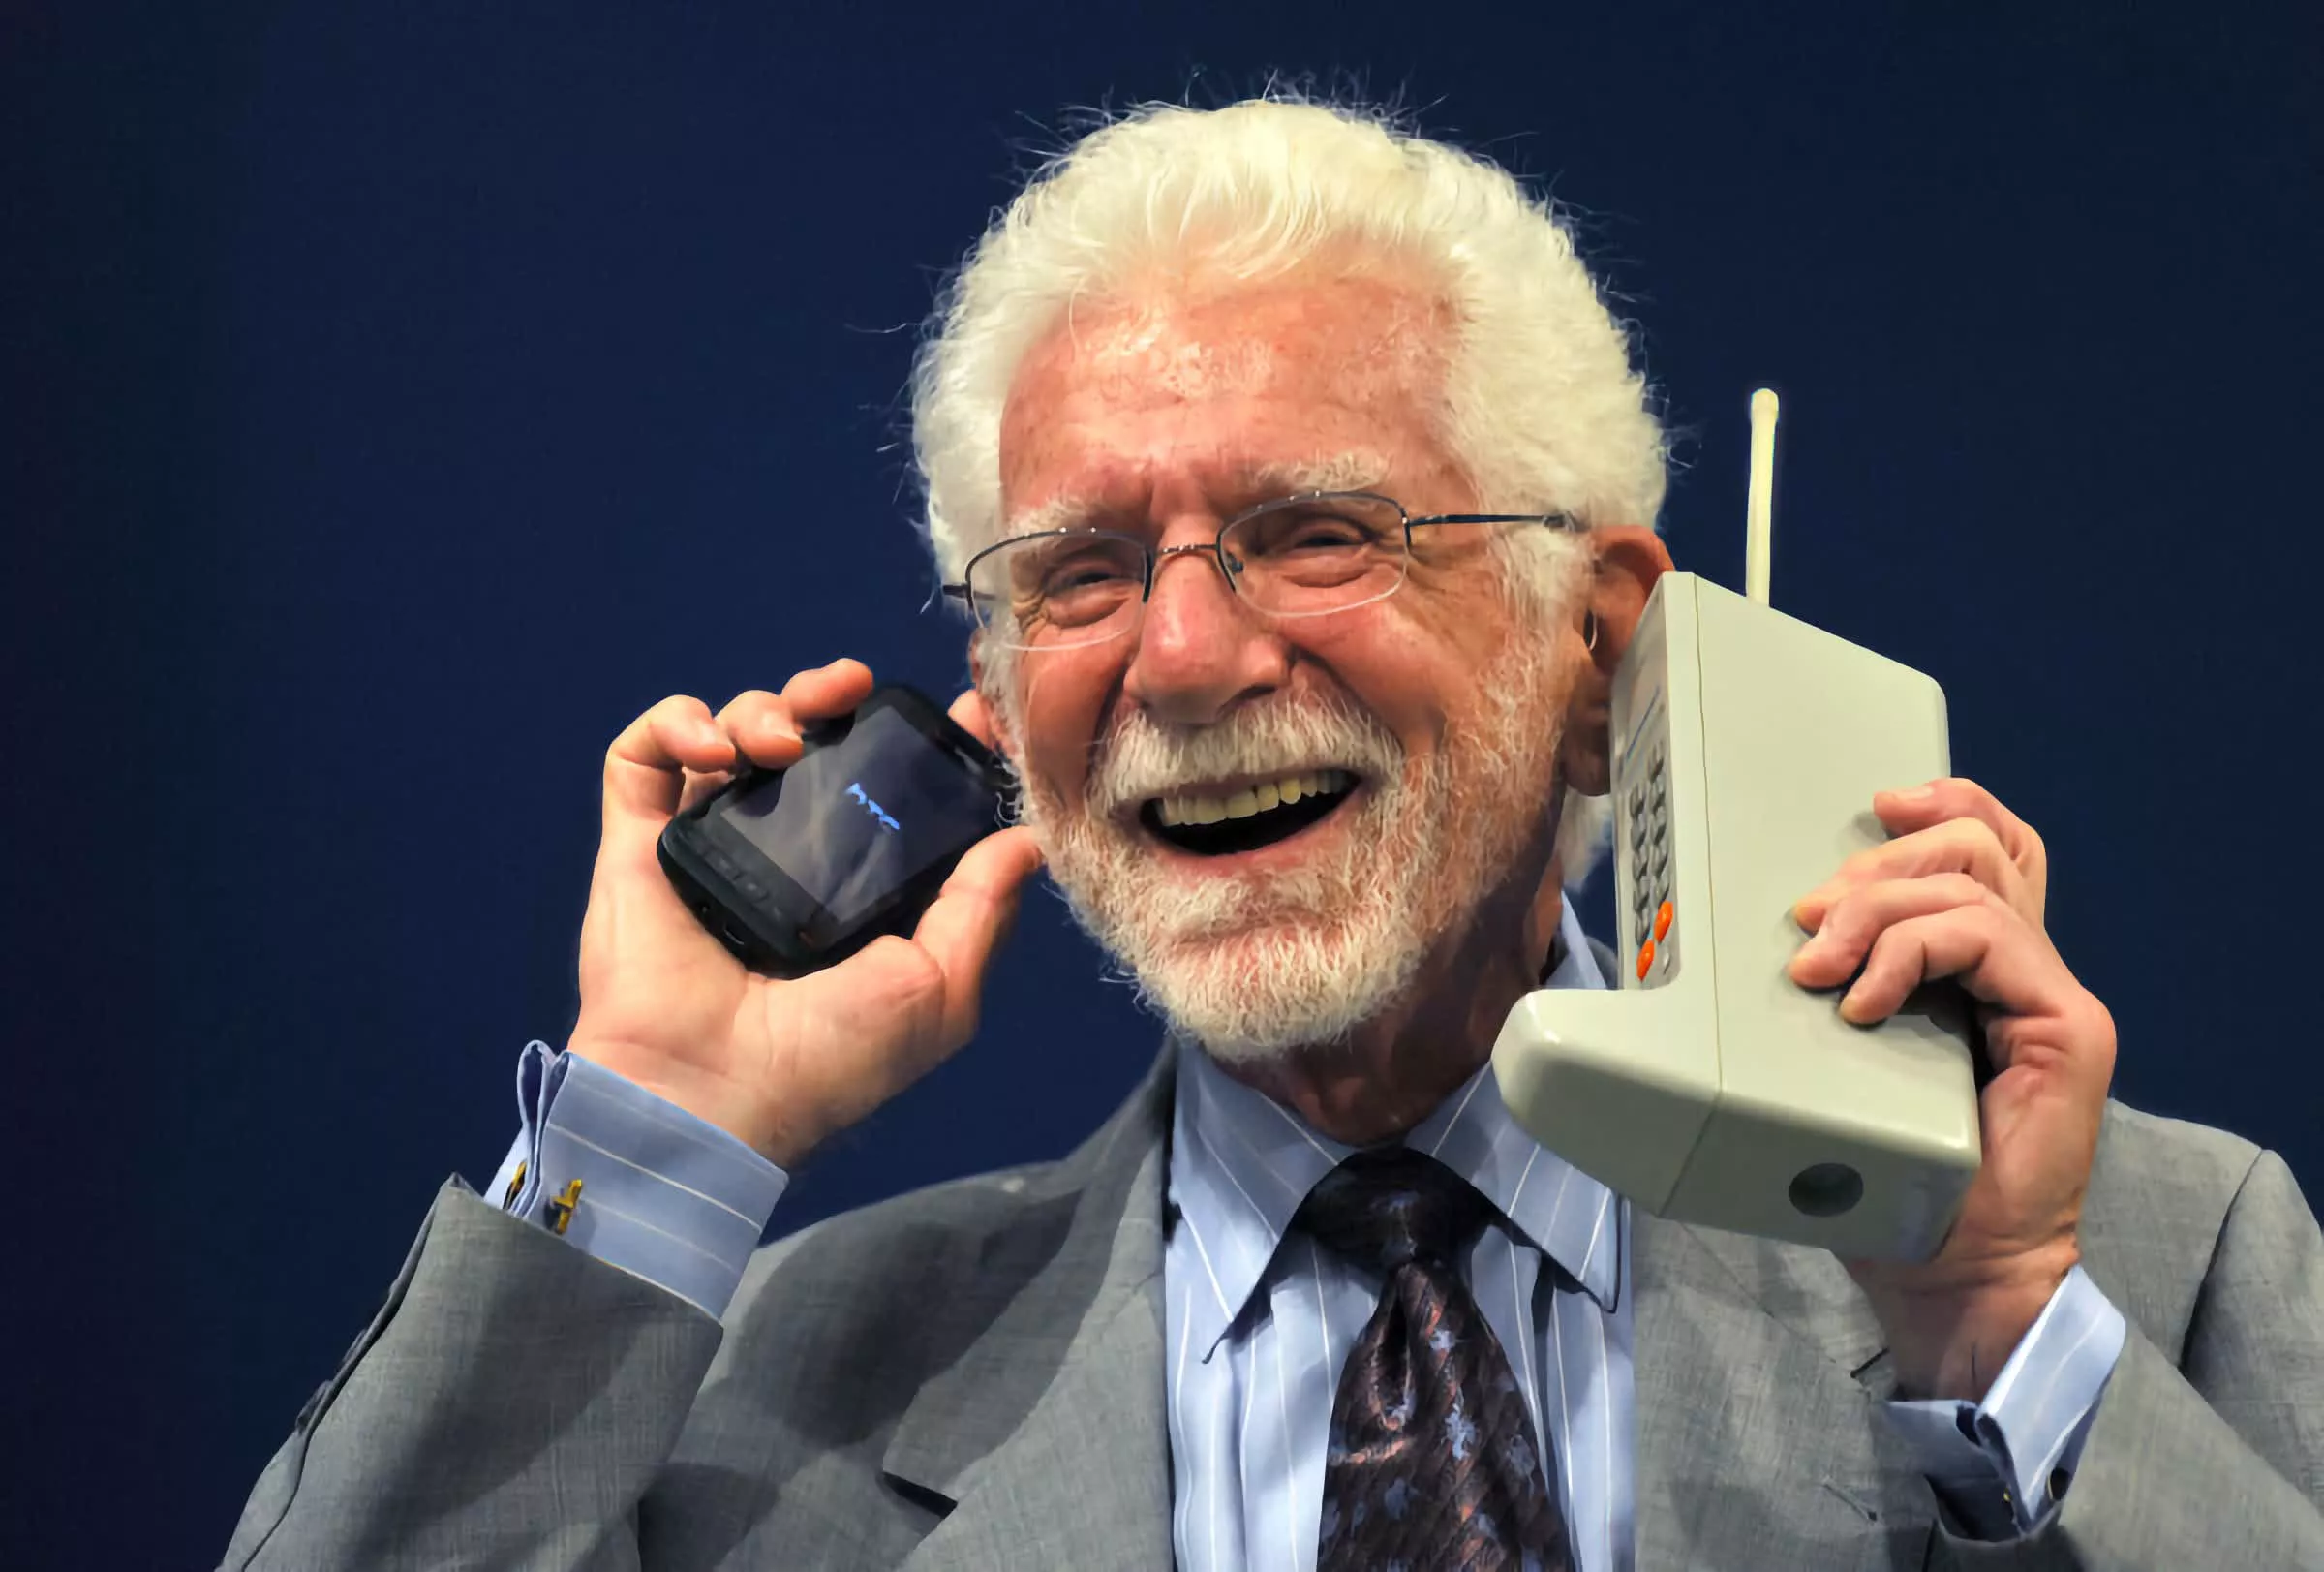 Le premier téléphone portable de l'histoire, le Motorola Dyna-Tac 8000X -  Le téléphone mobile a 40 ans, non mais allô